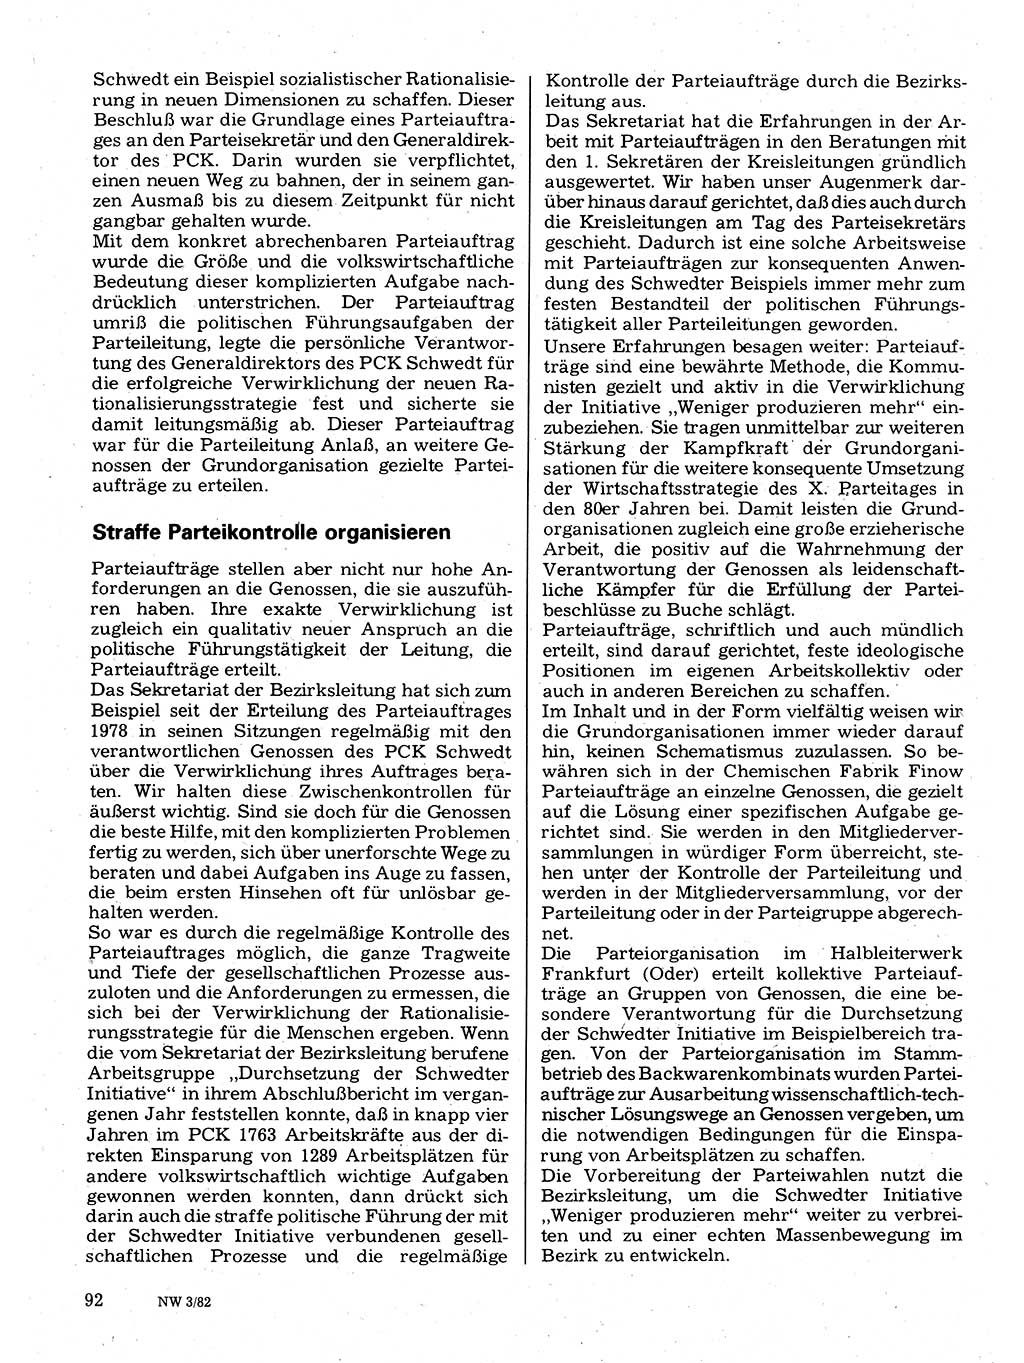 Neuer Weg (NW), Organ des Zentralkomitees (ZK) der SED (Sozialistische Einheitspartei Deutschlands) für Fragen des Parteilebens, 37. Jahrgang [Deutsche Demokratische Republik (DDR)] 1982, Seite 92 (NW ZK SED DDR 1982, S. 92)